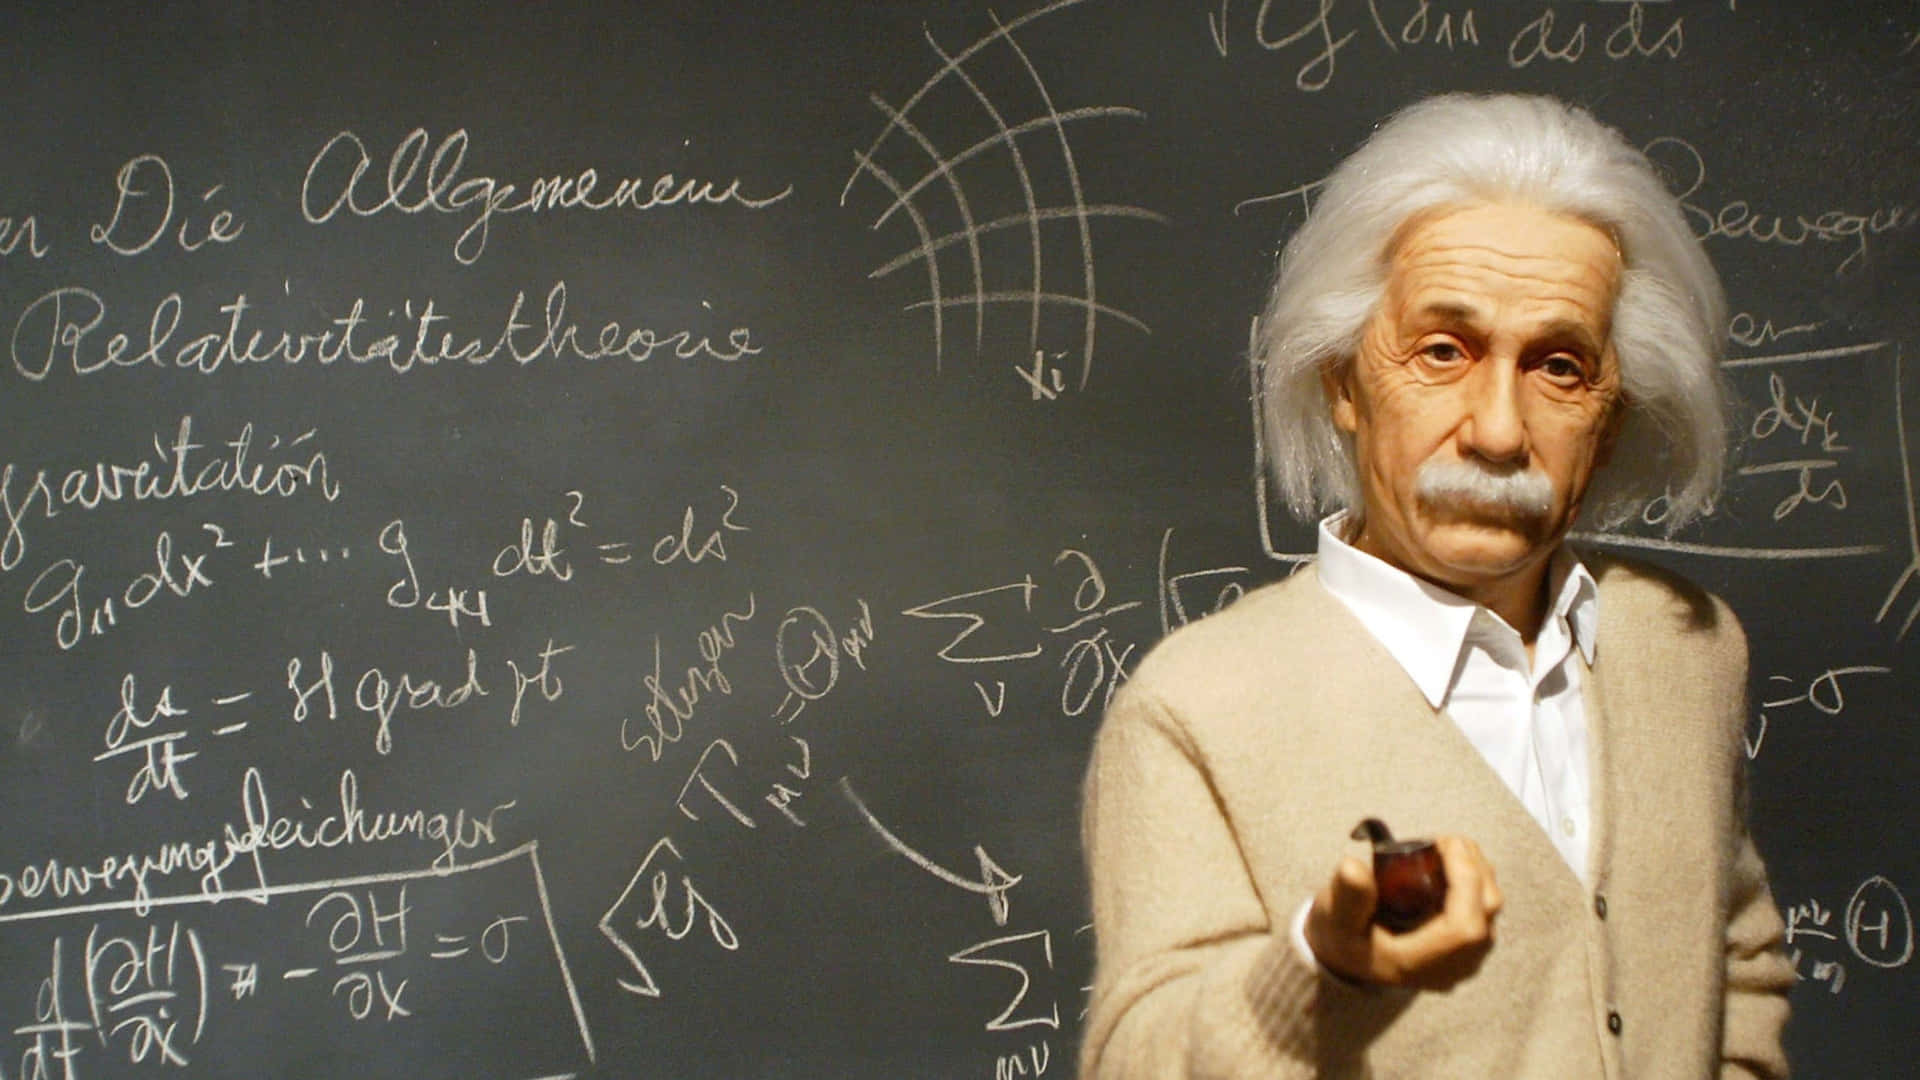 Albert Einstein - A Statue In Front Of A Chalkboard